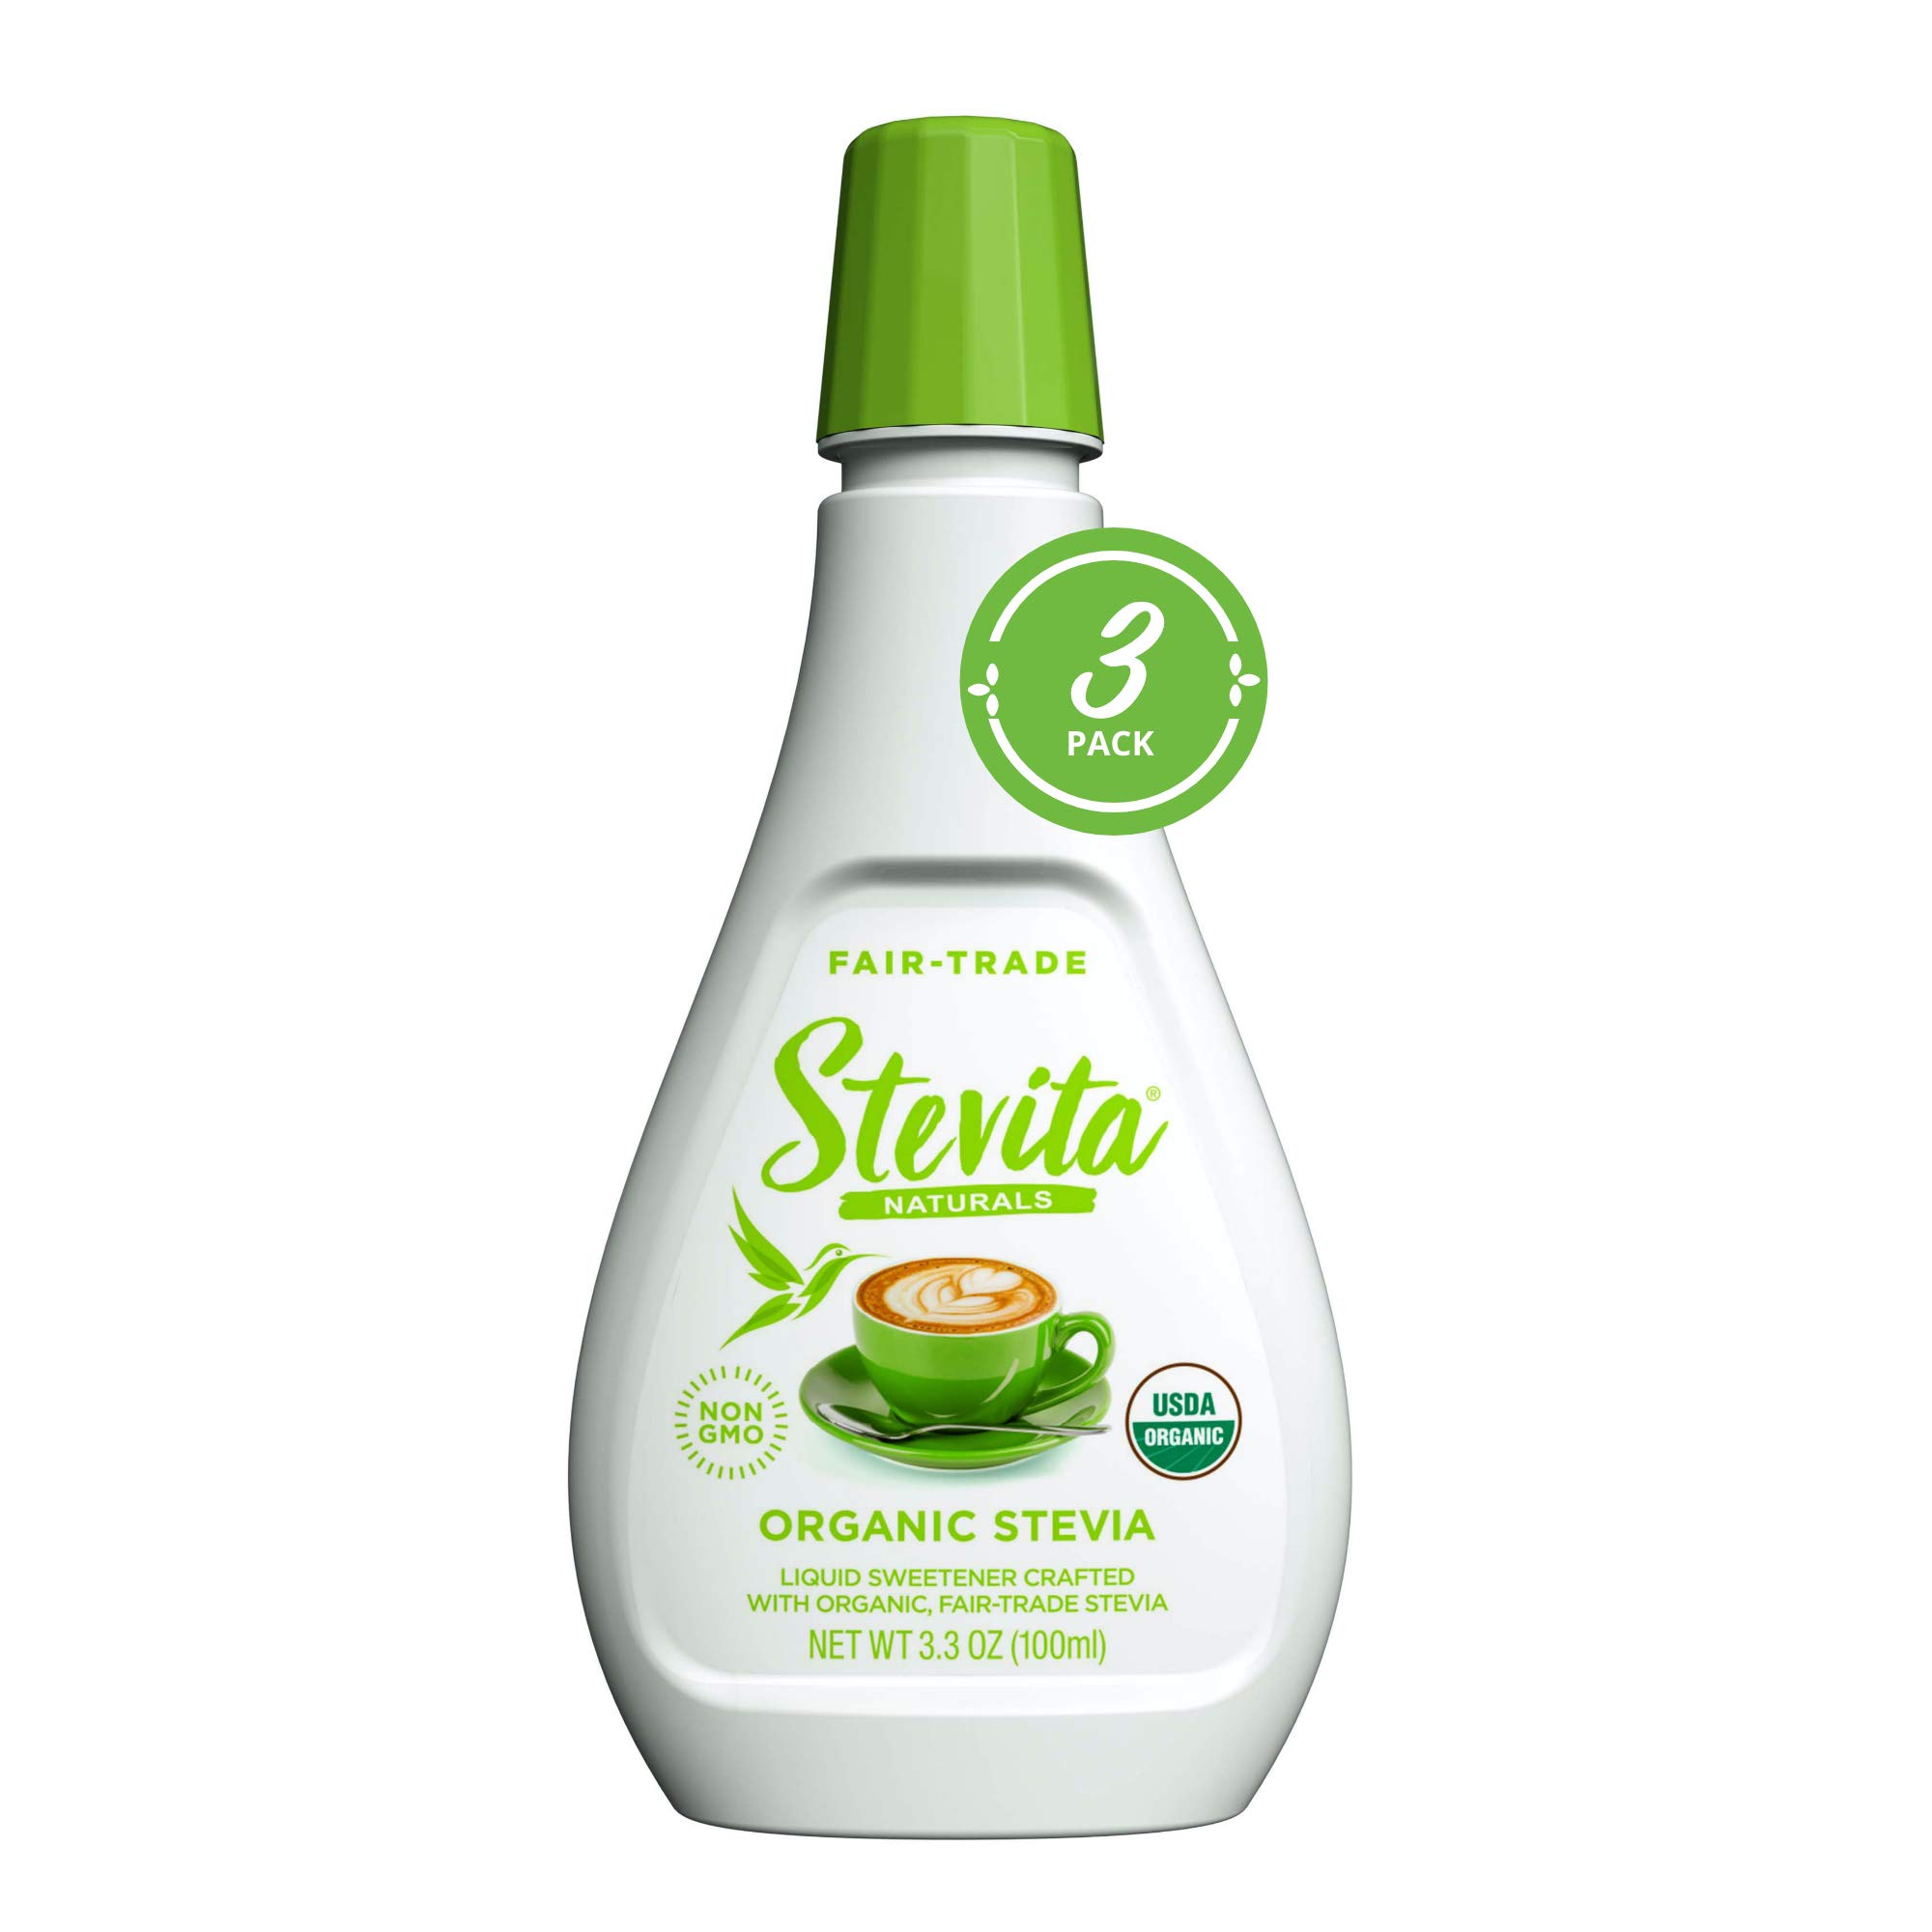 Stevita Organic Liquid Stevia - 3.3 oz, Pack of 3 - All-Natural Sweetener, Zero Calories - USDA Organic, Non-GMO, Vegan, Kosher, Keto, Paleo, Glute...